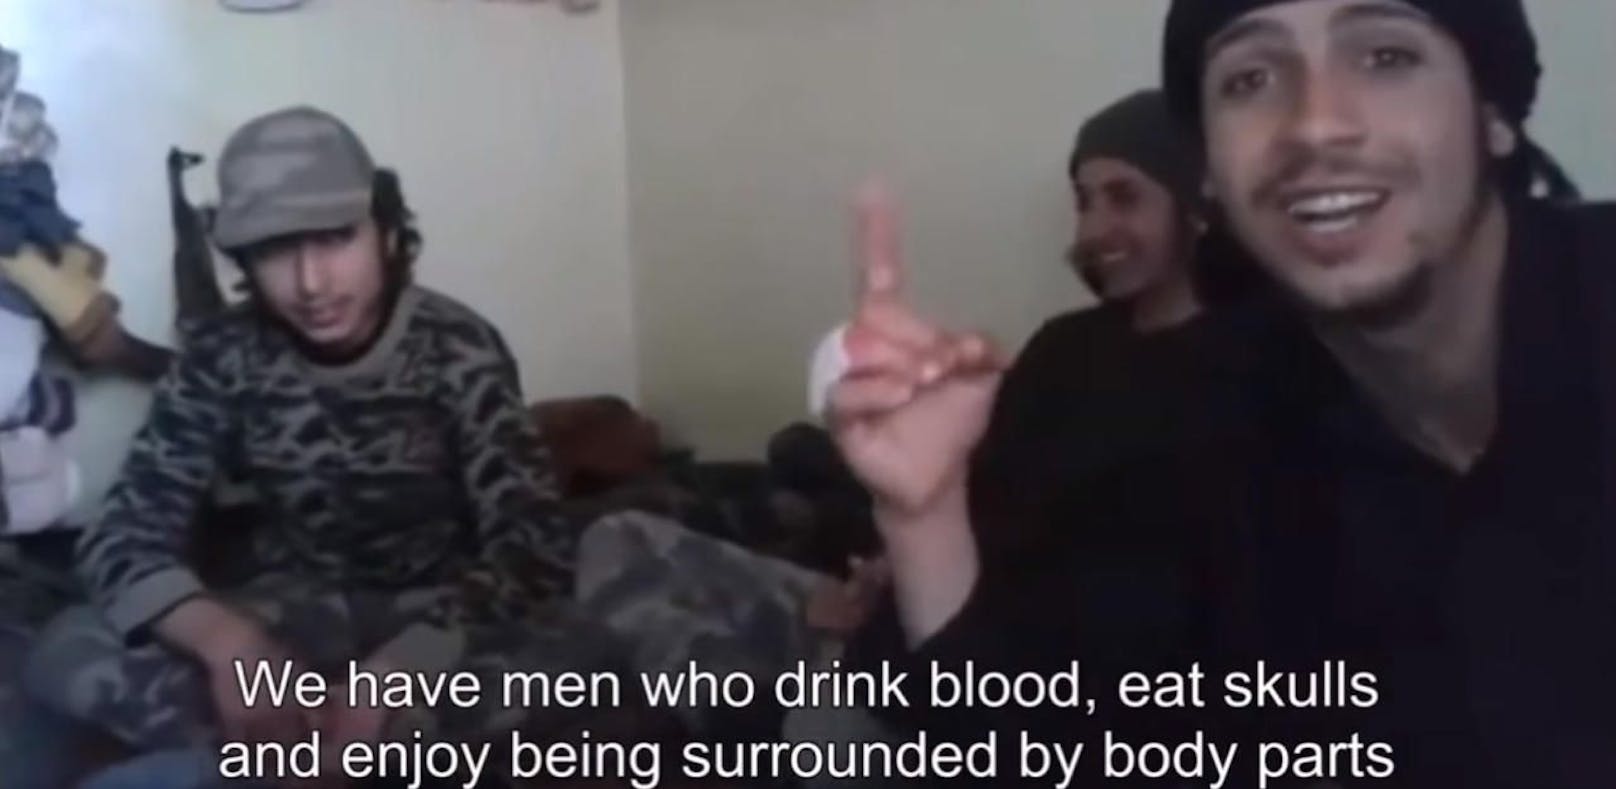 Dschihadist: "Wir haben Männer, die Blut trinken"